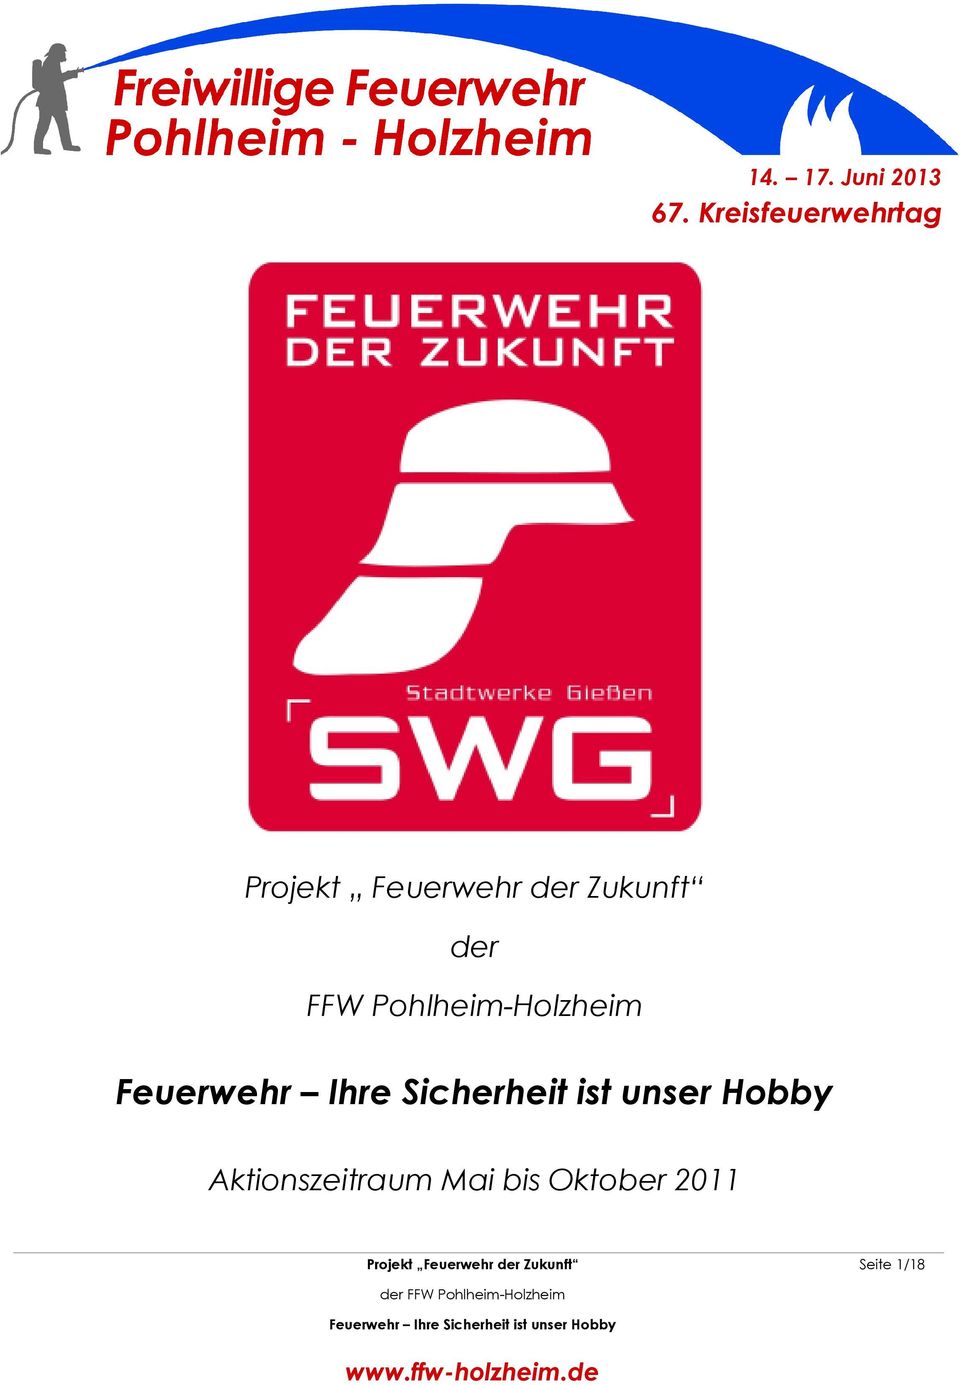 Zukunft der FFW Pohlheim-Holzheim